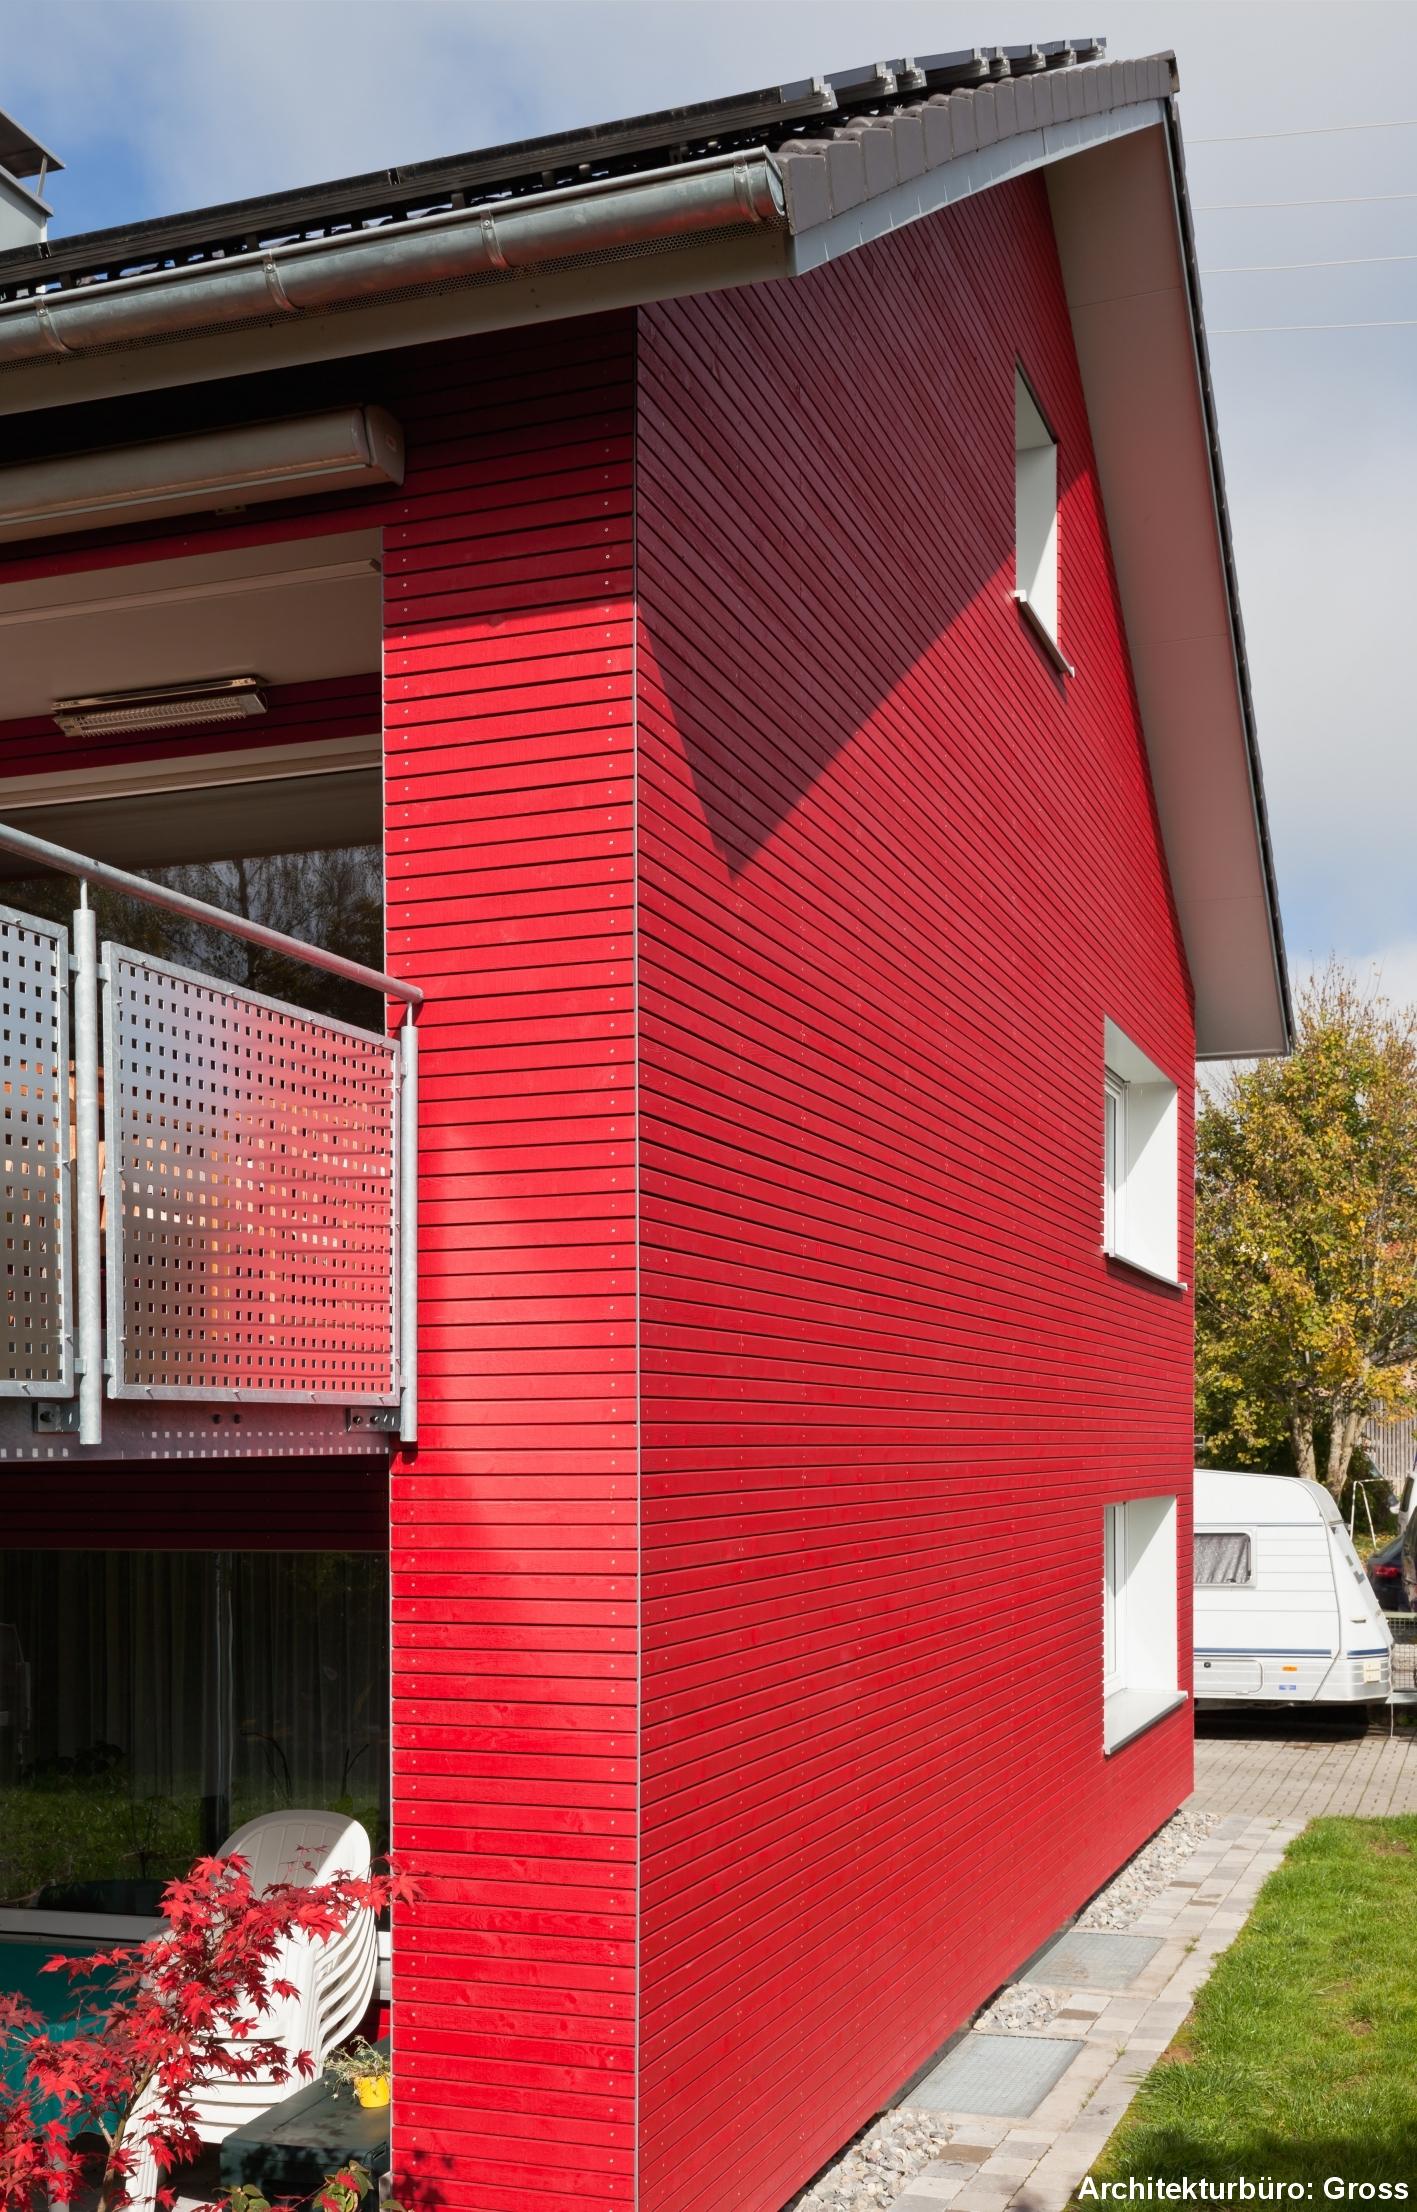 Rhombusleiste Granatrot #holzfassade #außenfassade #hausfassade ©Franz Habisreutinger GmbH & Co. KG